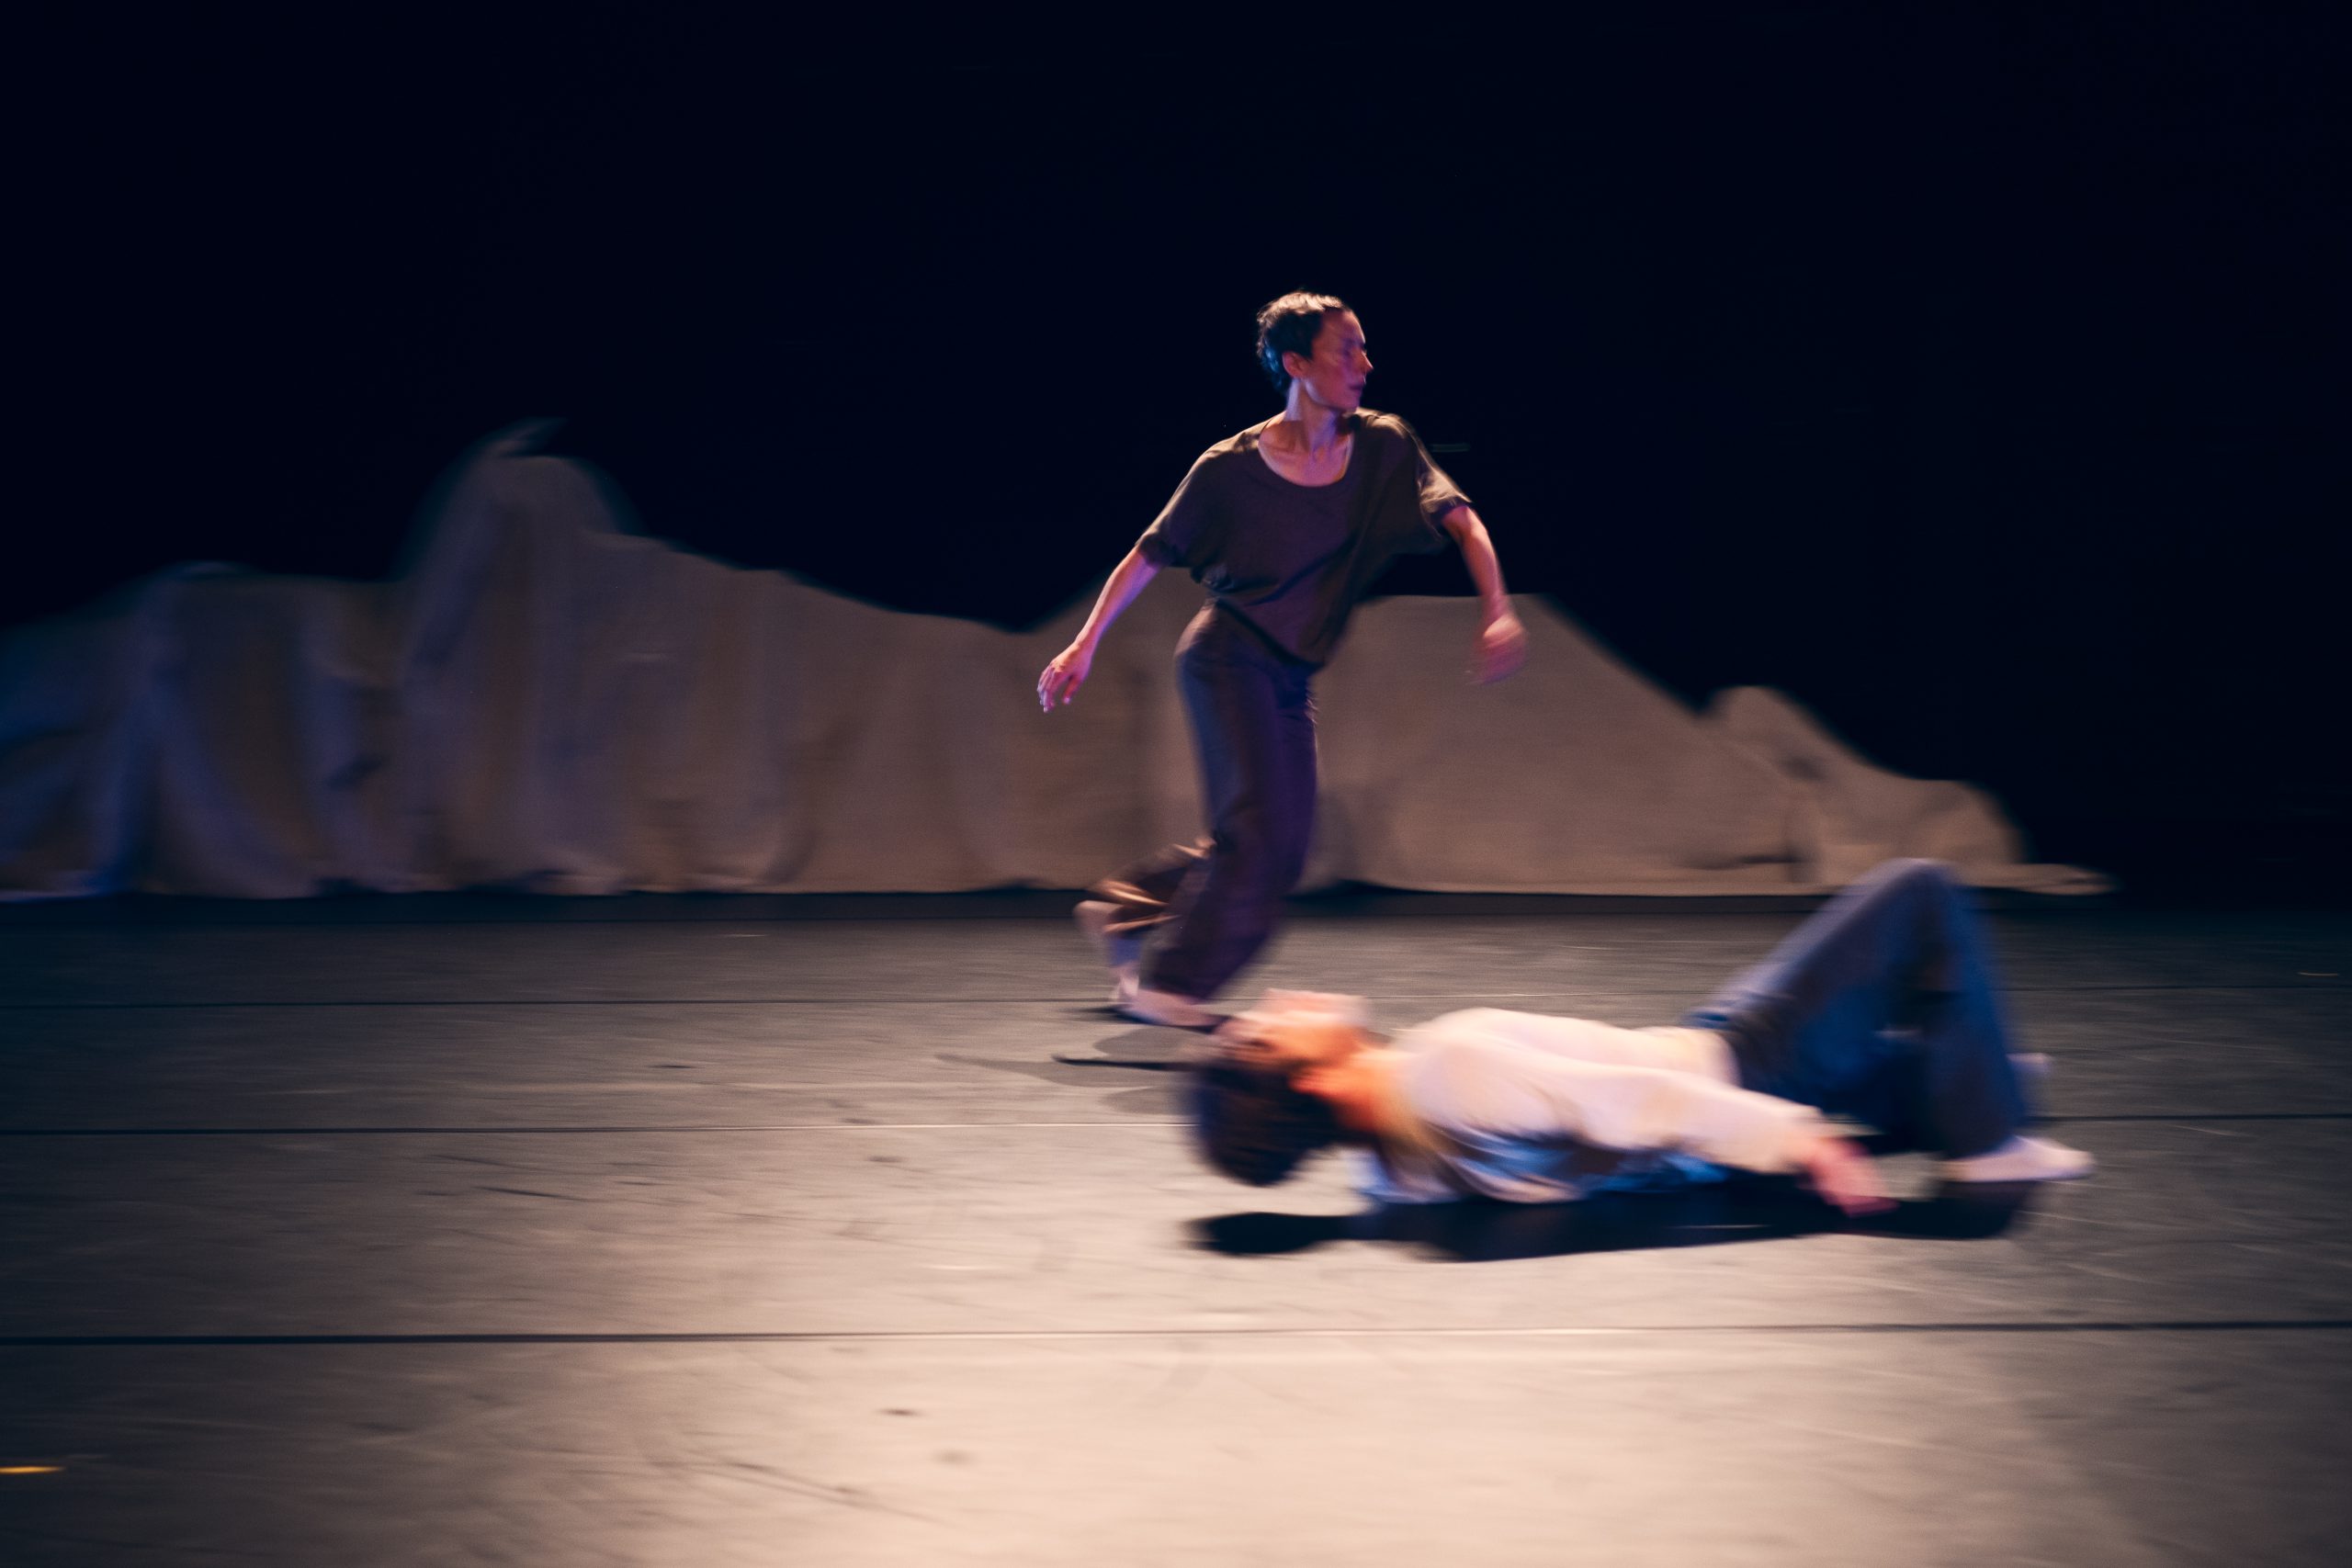 Eine frau rennt auf der Bühne, ein Mann legt sich auf den Boden. Dynamische Szene.